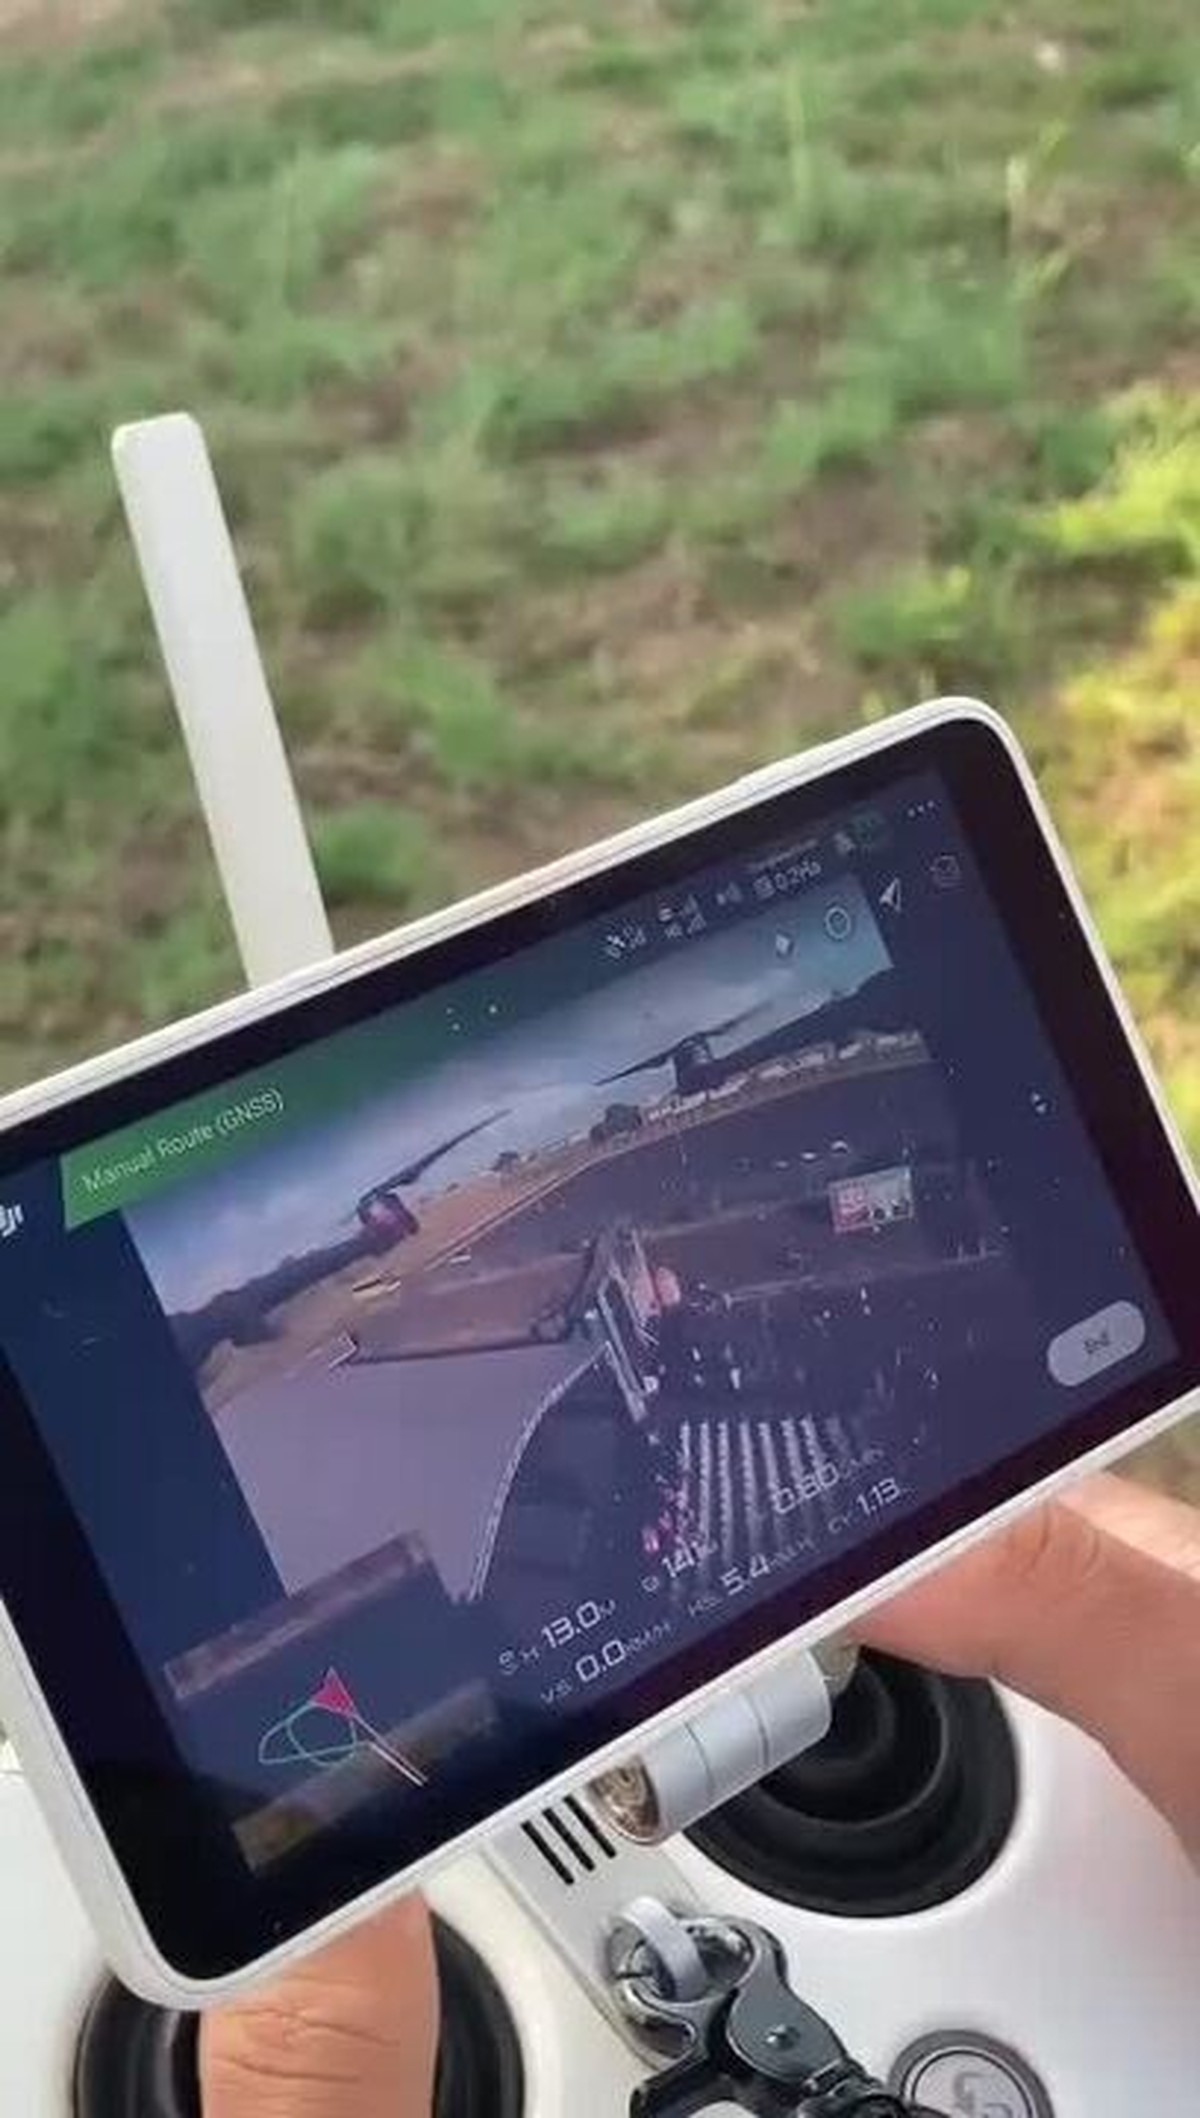 Vídeo: operador de drone diz que jogou veneno em evento de Lula em MG